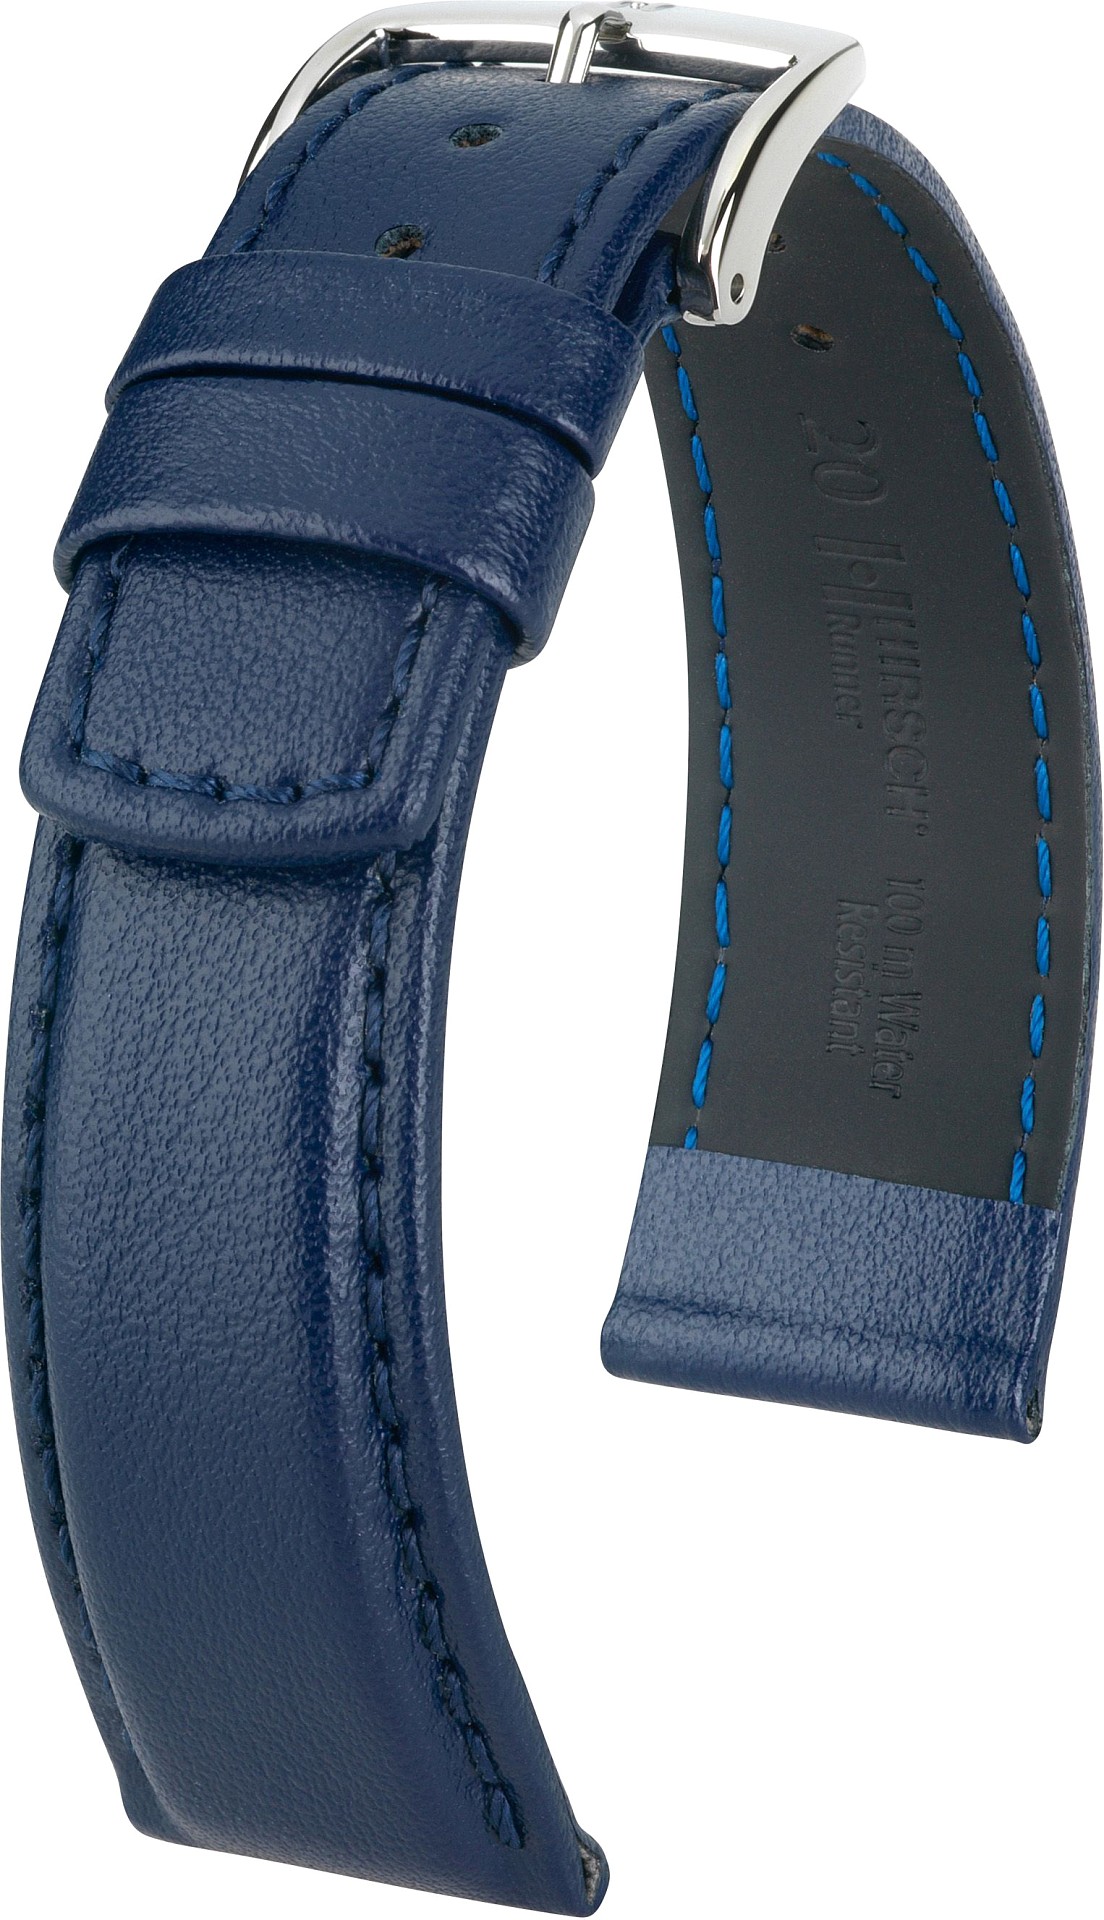   Uhrenarmband Hirsch Runner Dornschließe - Leder, glatt - blau 